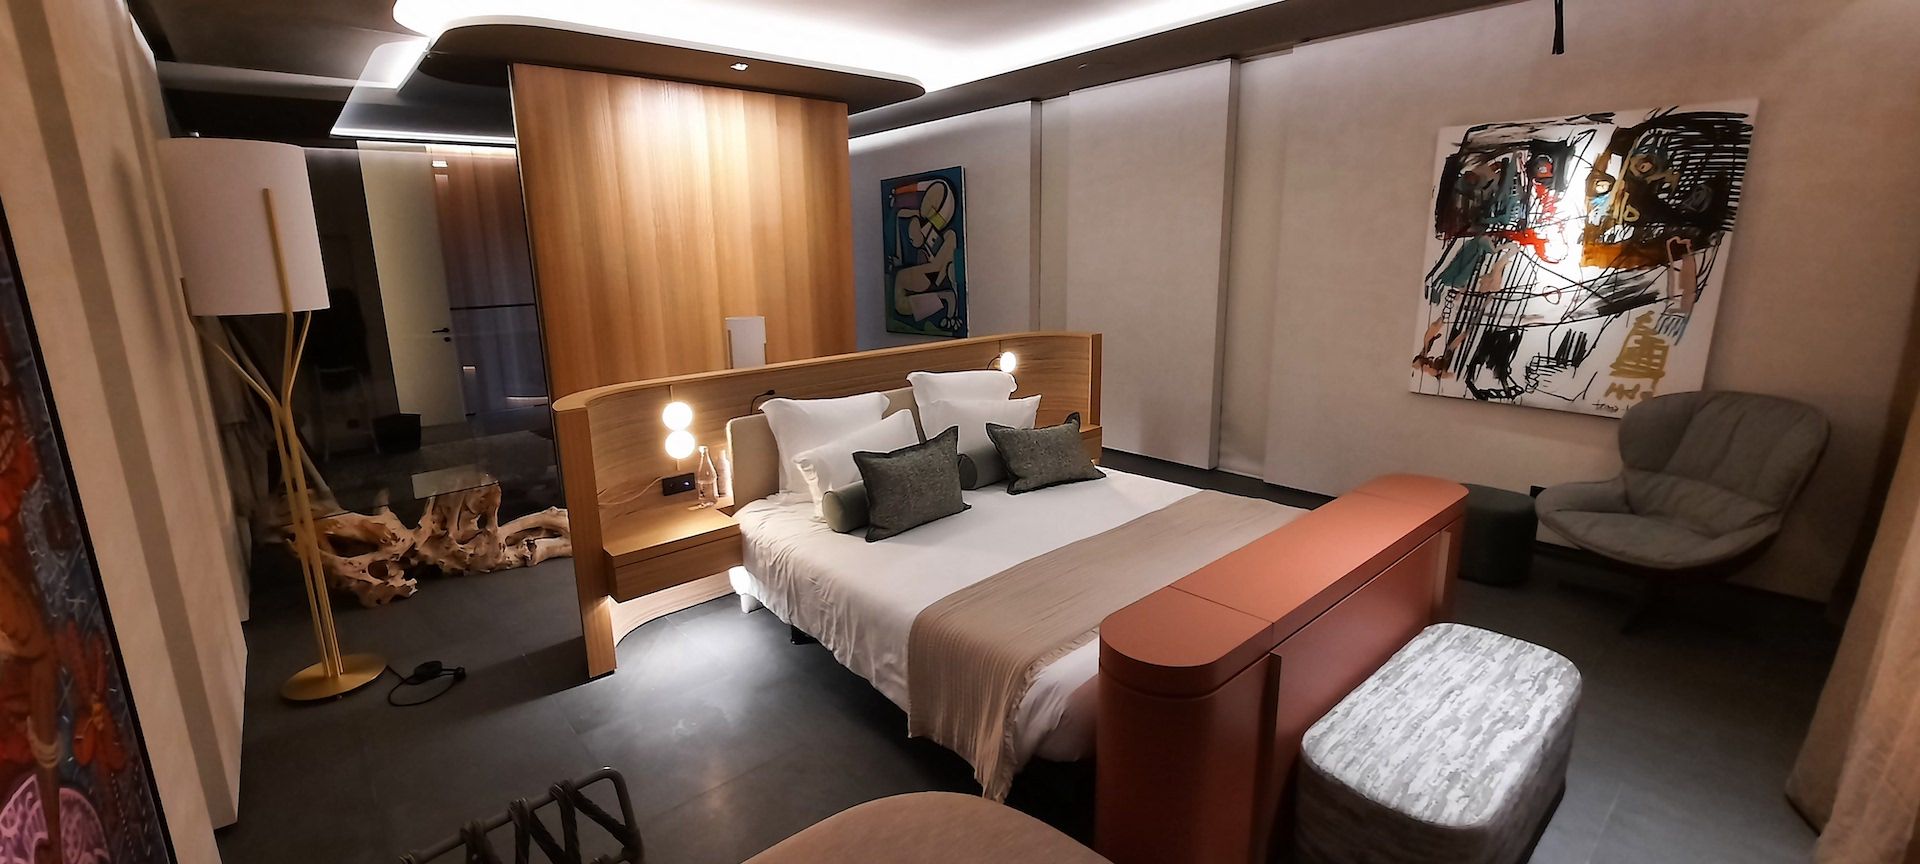 Chambre d'hôtel design avec tête de lit et séparation en bois